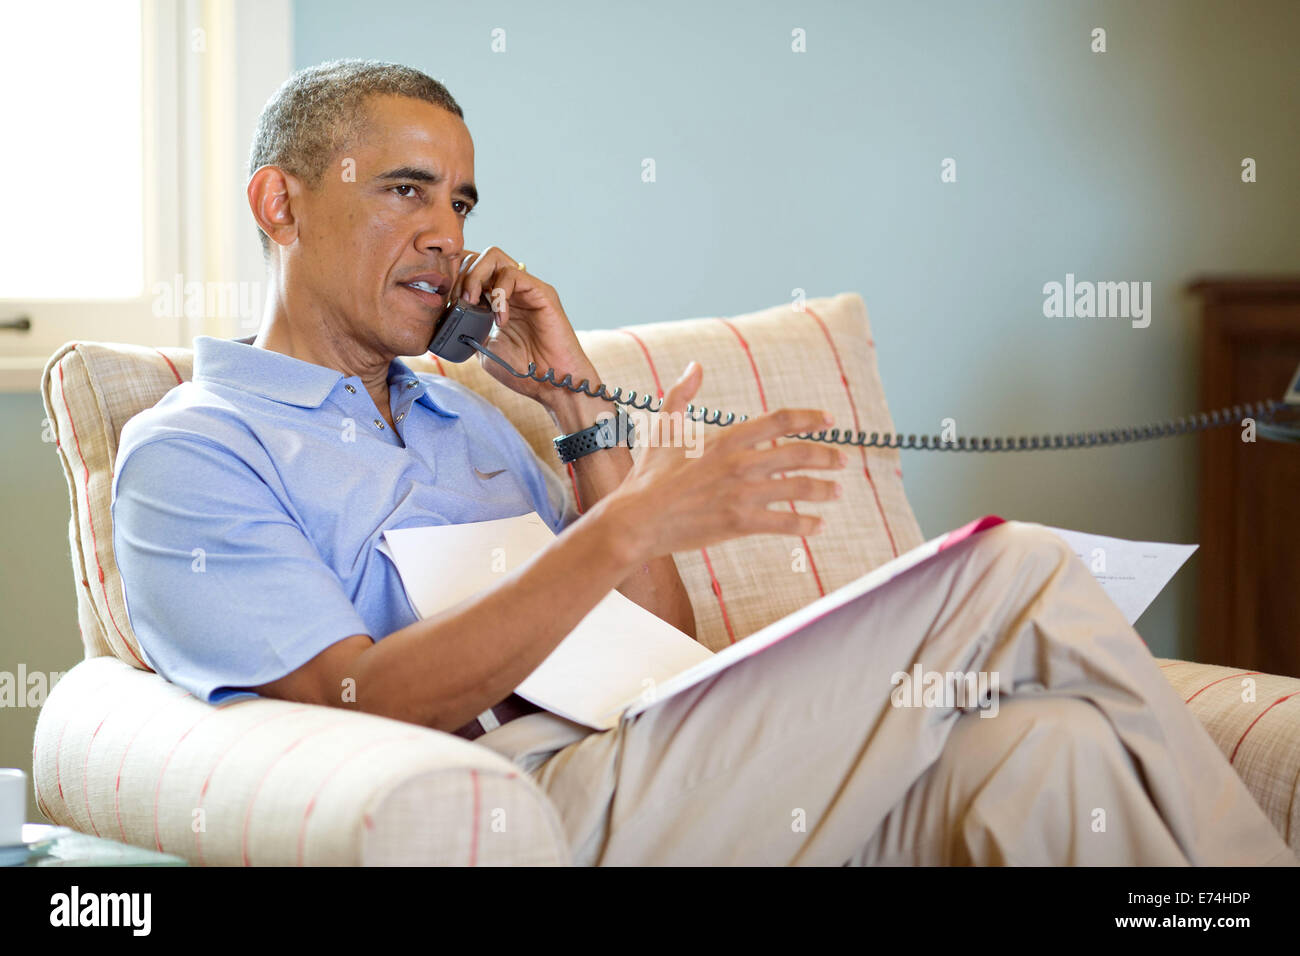 Präsident Barack Obama spricht am Telefon mit Premierminister Stephen Harper von Kanada, in Chilmark, Martha es Vineyard, Darmstadt Stockfoto